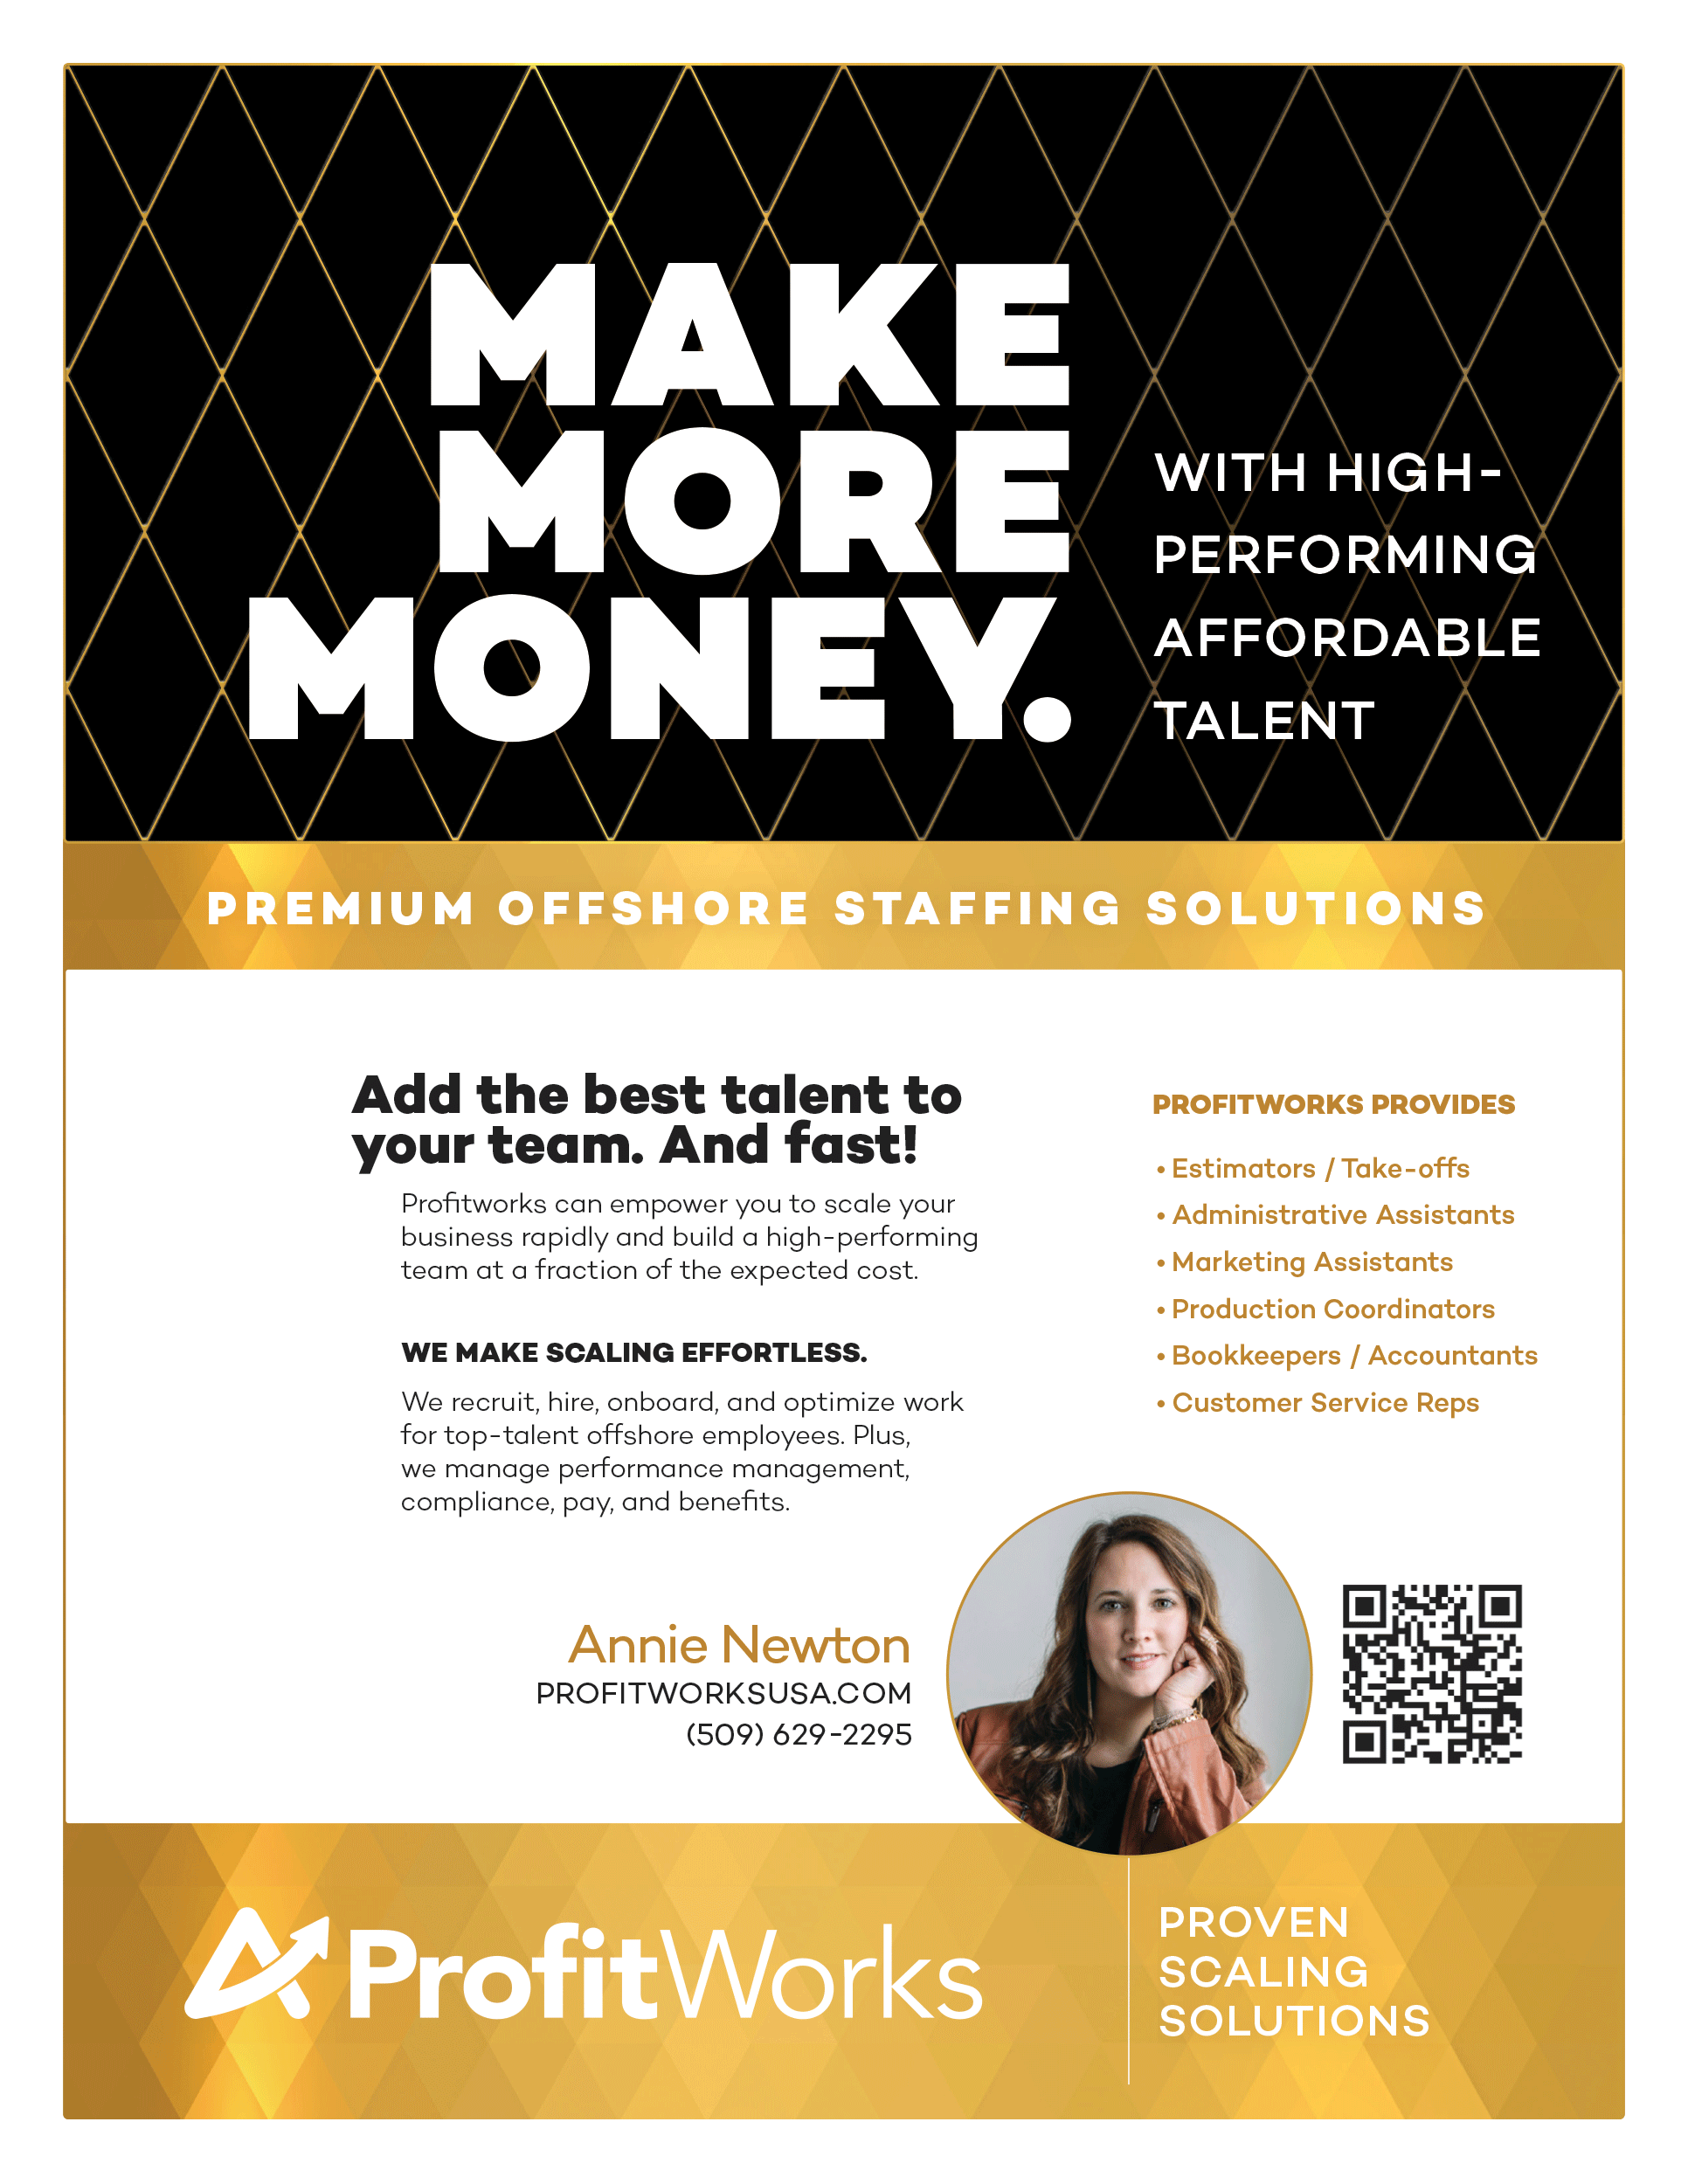 Profitworks-Make-Money-Flyer.png